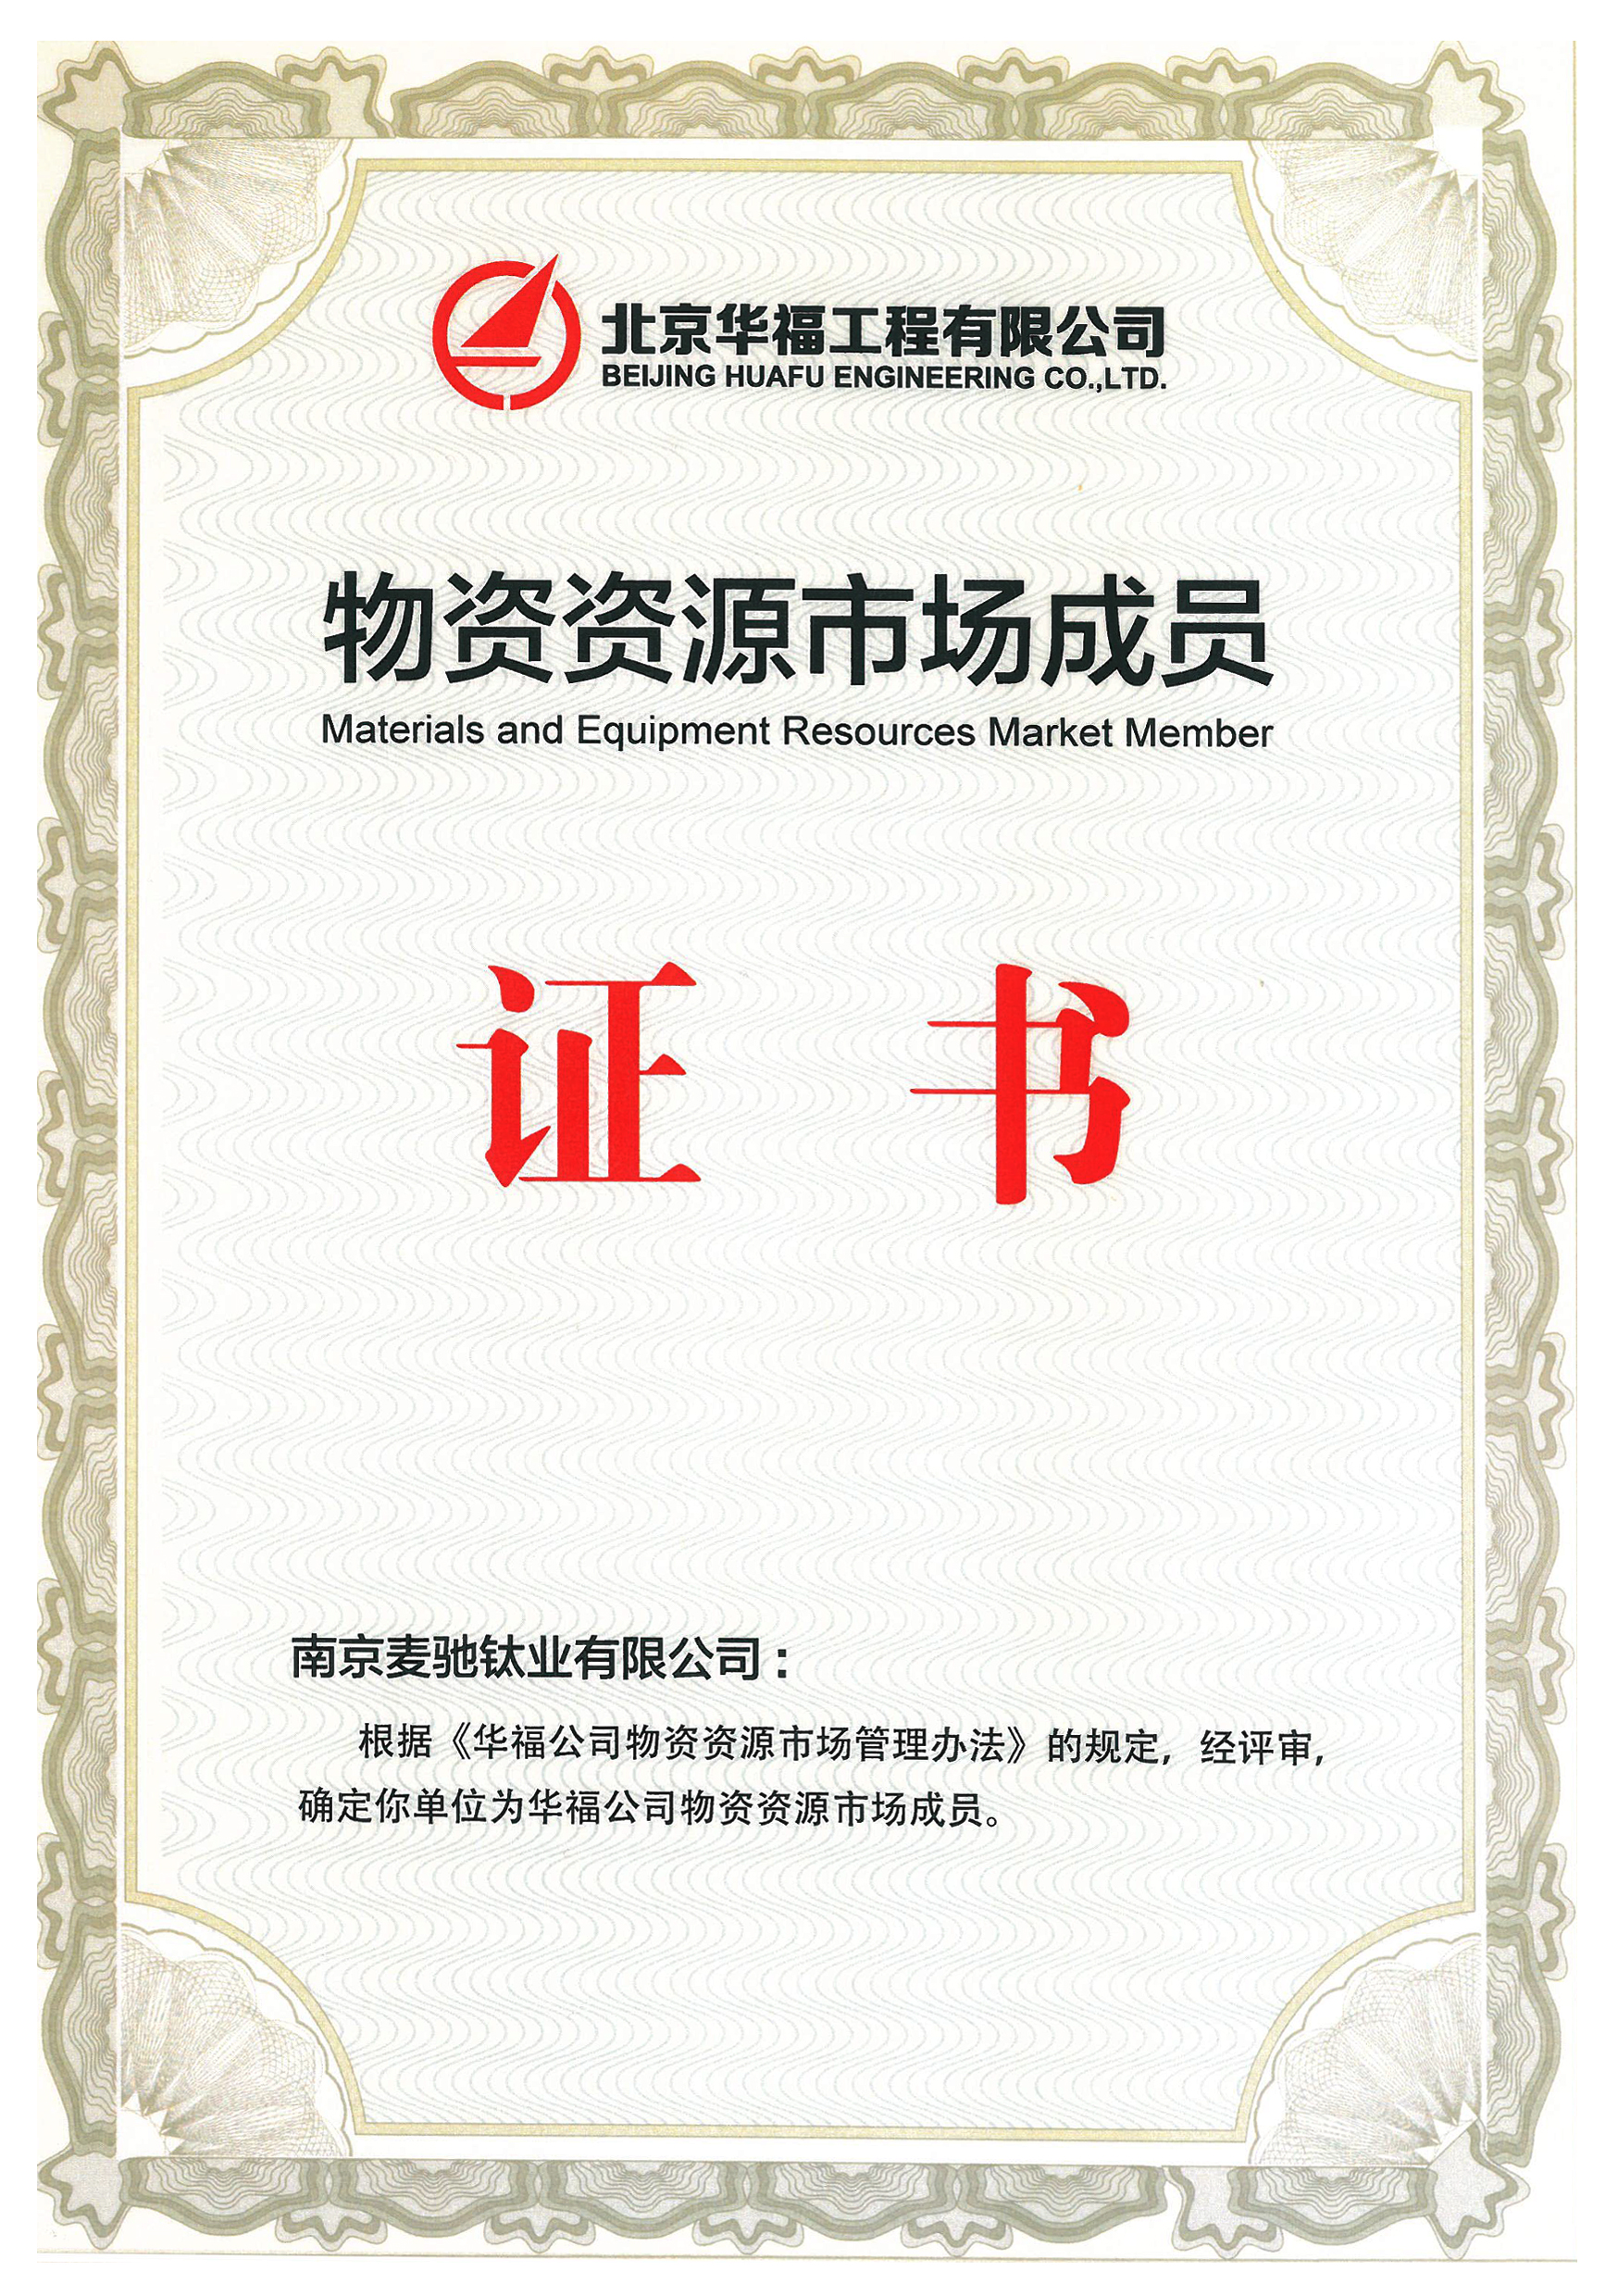 Material Resources Market Membership Certificate